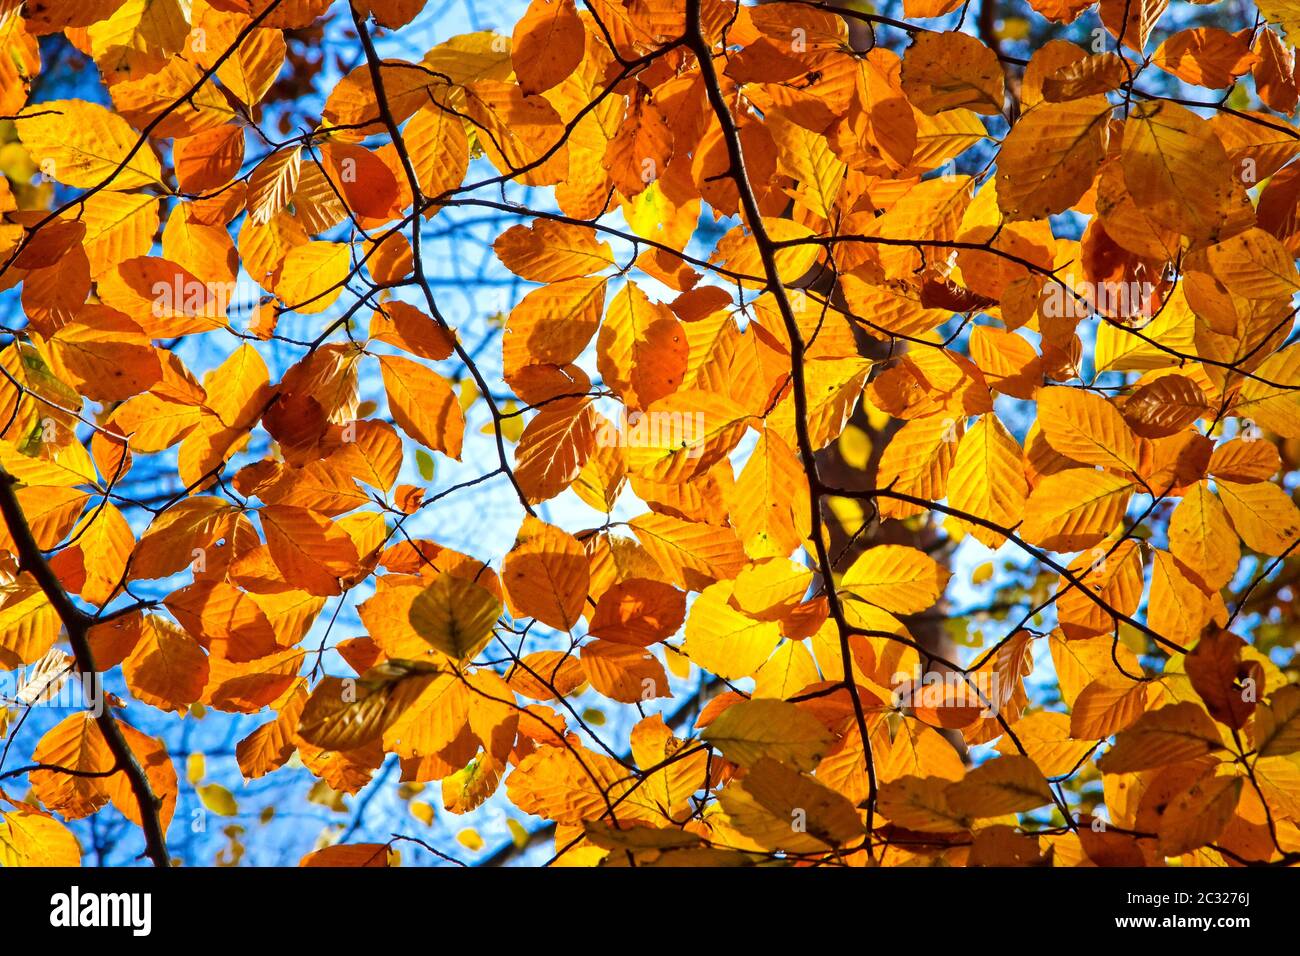 Feuillage d'automne jaune, orange et rouge par beau temps Banque D'Images